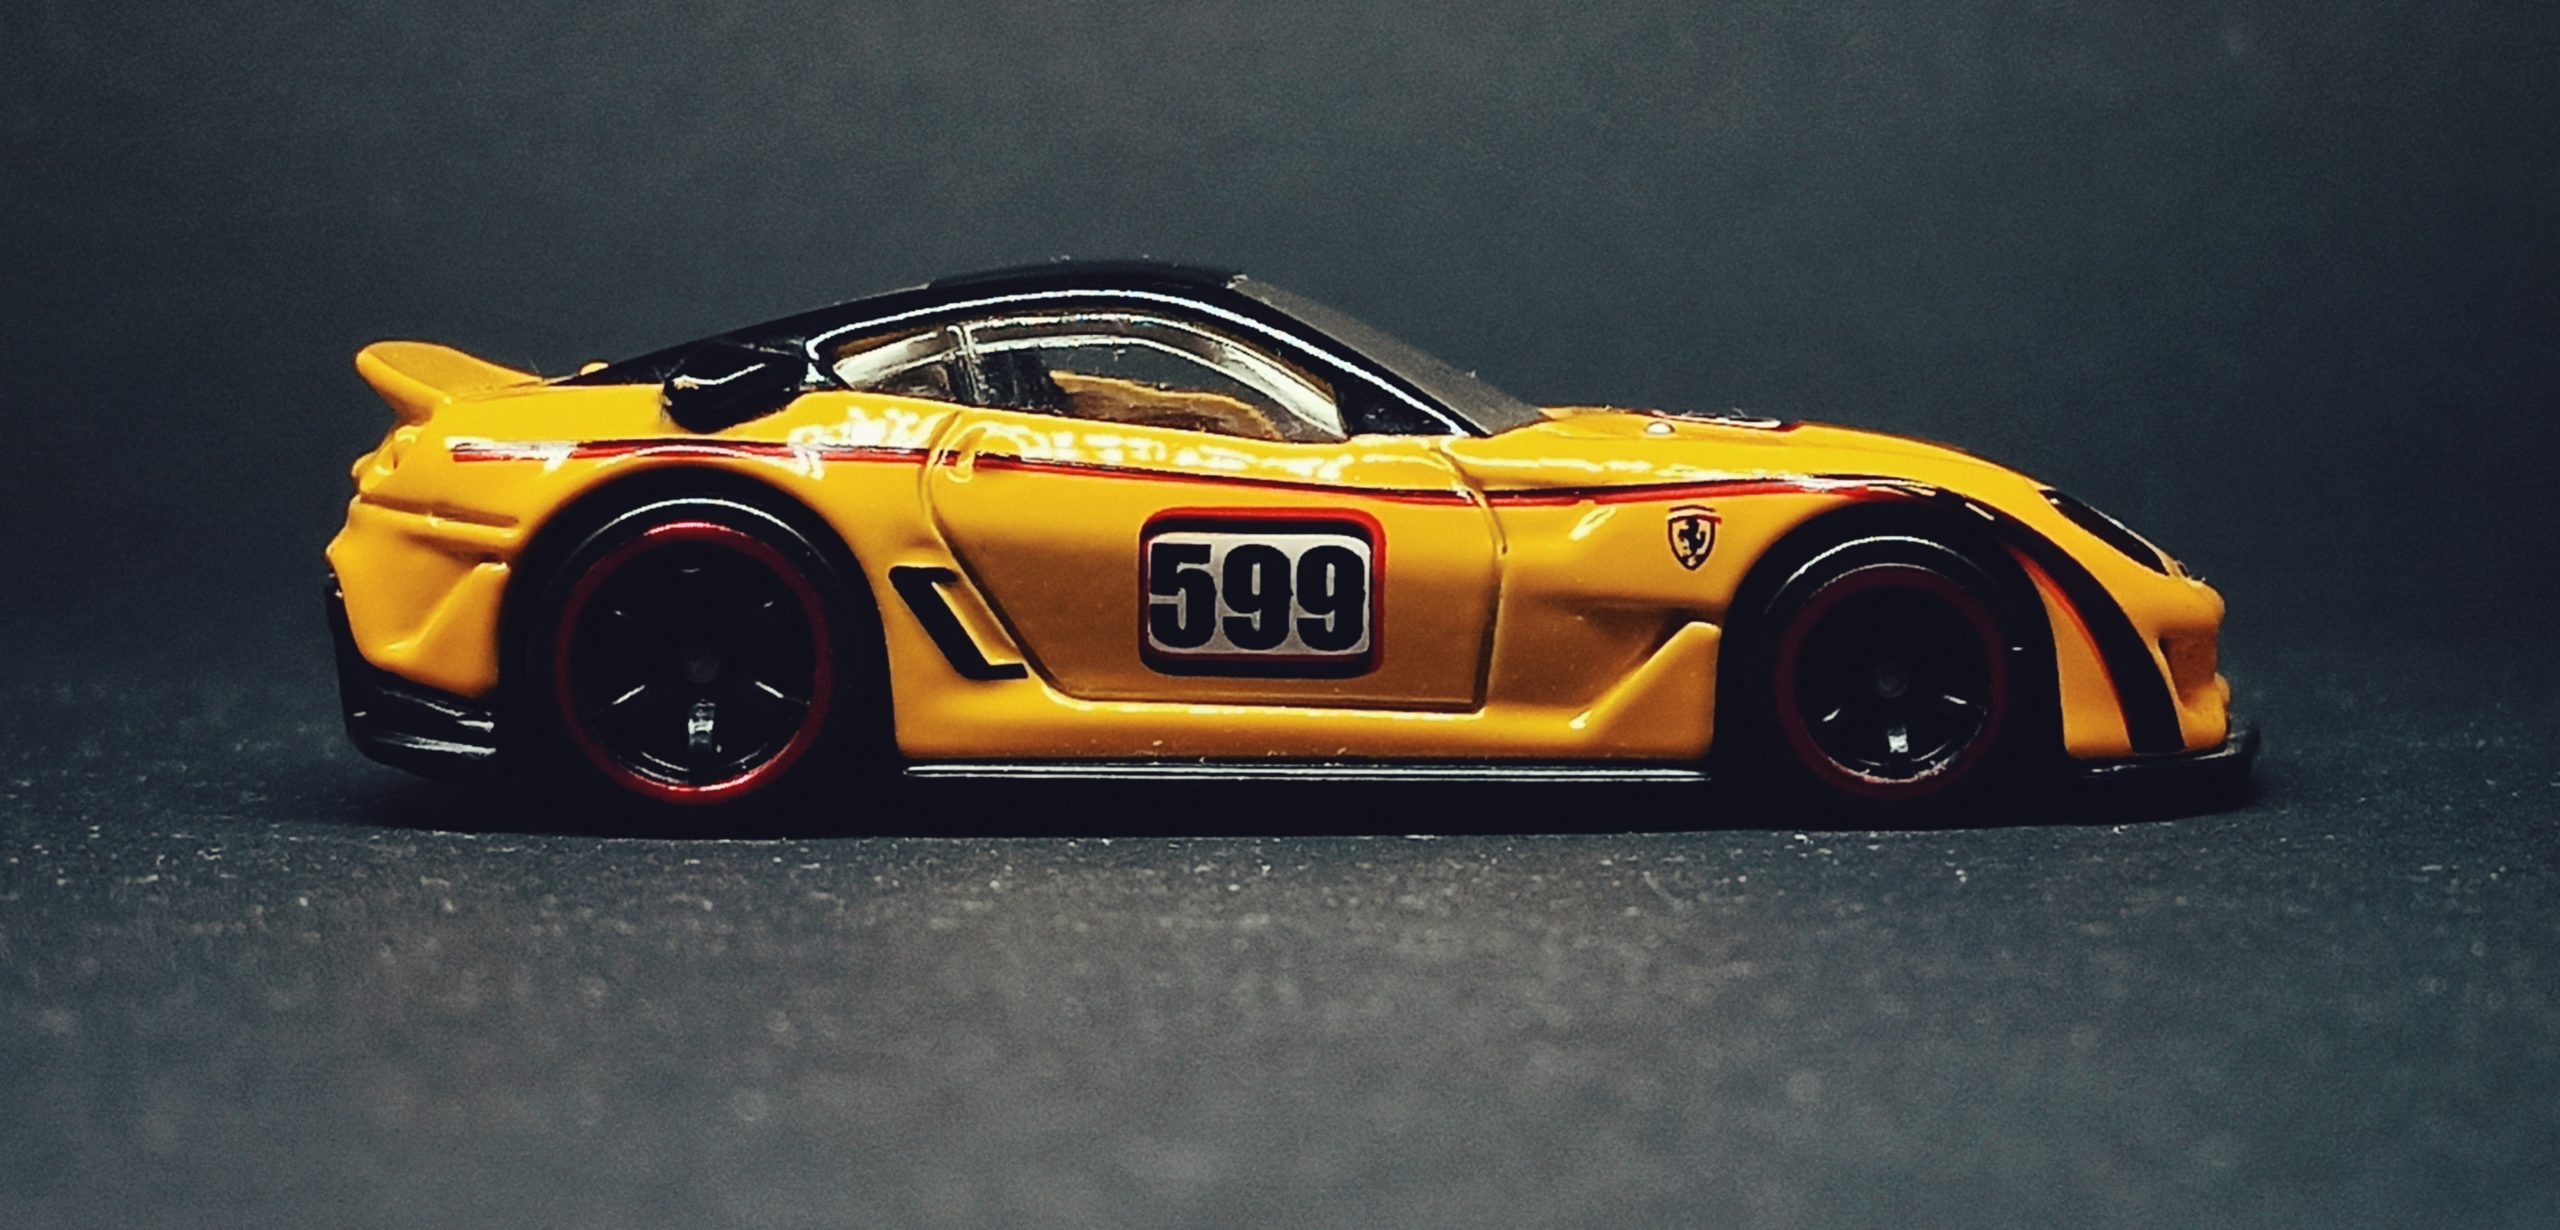 Hot Wheels Ferrari 599XX (T4408) 2010 Speed Machines yellow